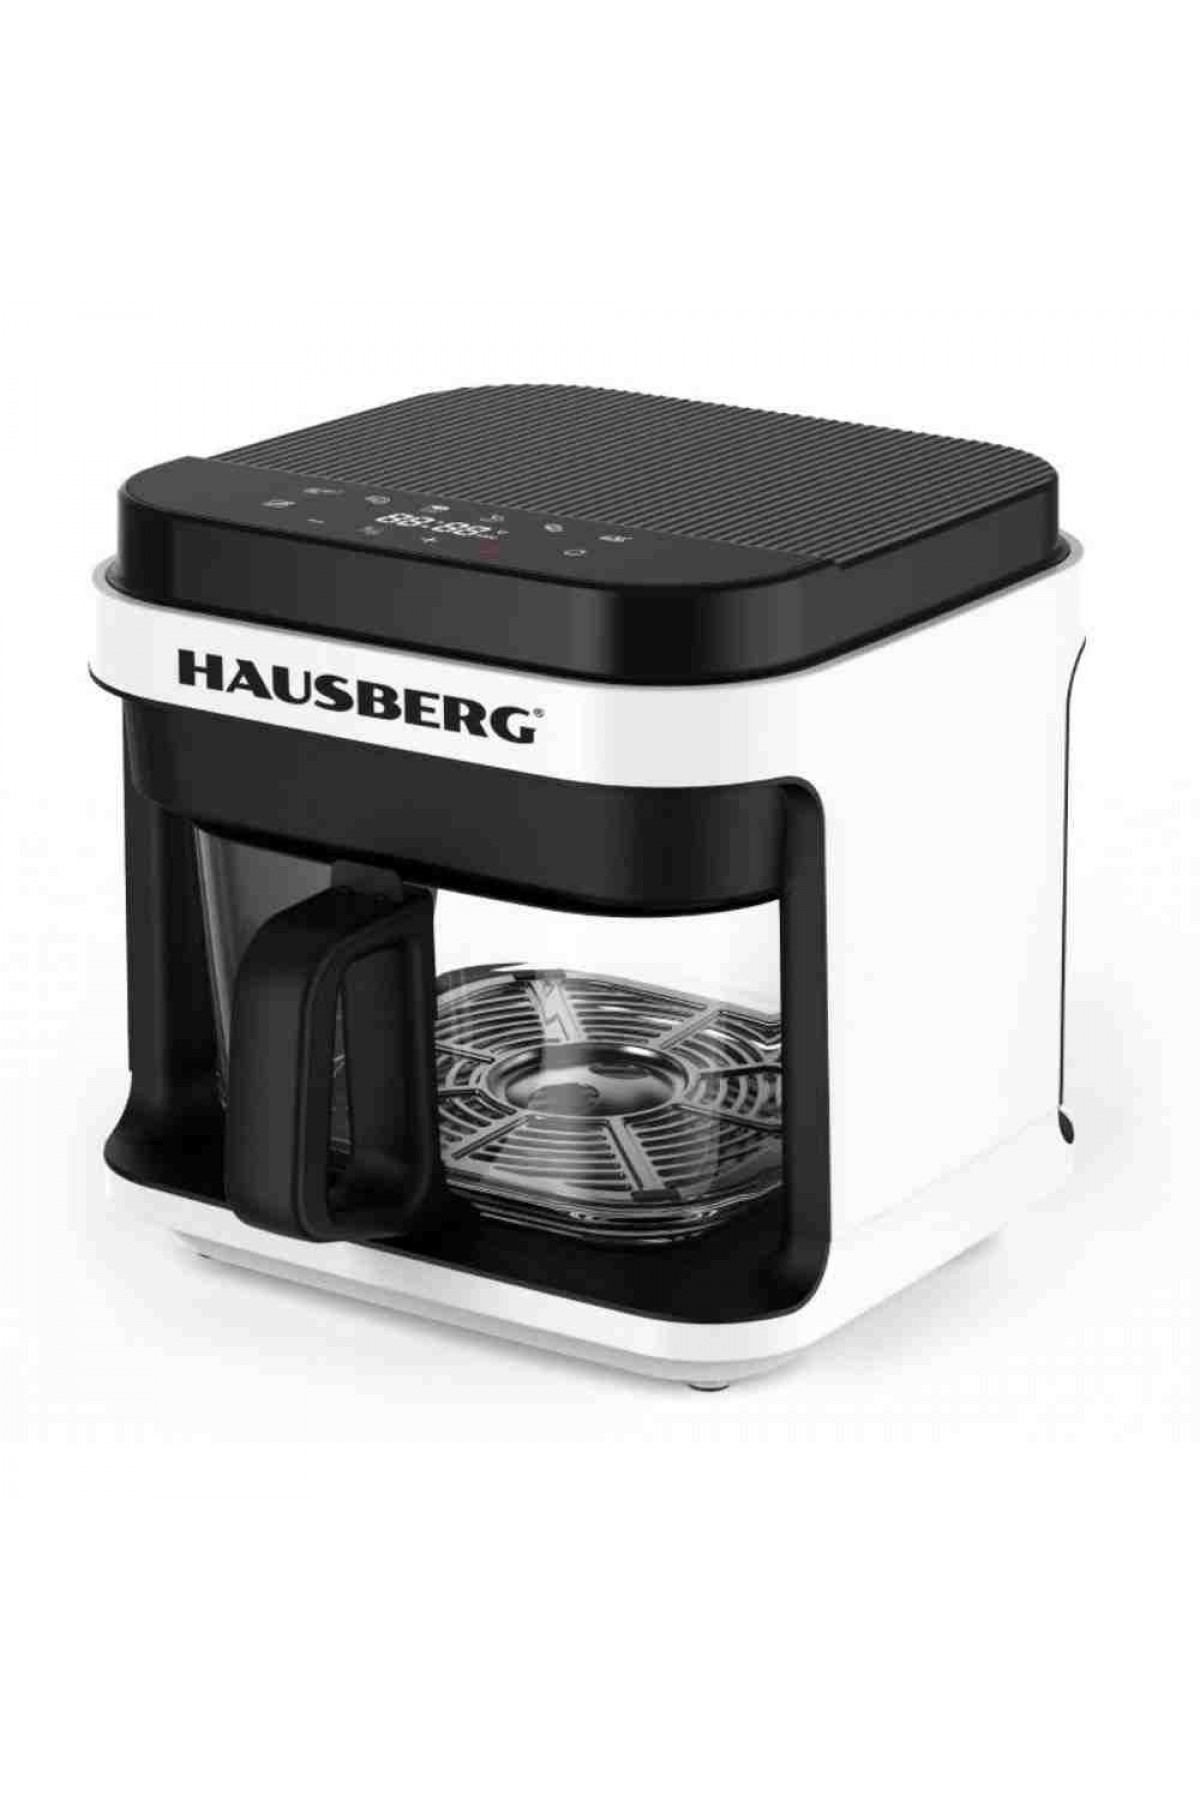 Hausberg HB 2345 5.5 Litre Airfryer Cam Dijital Air Fryer Fritöz